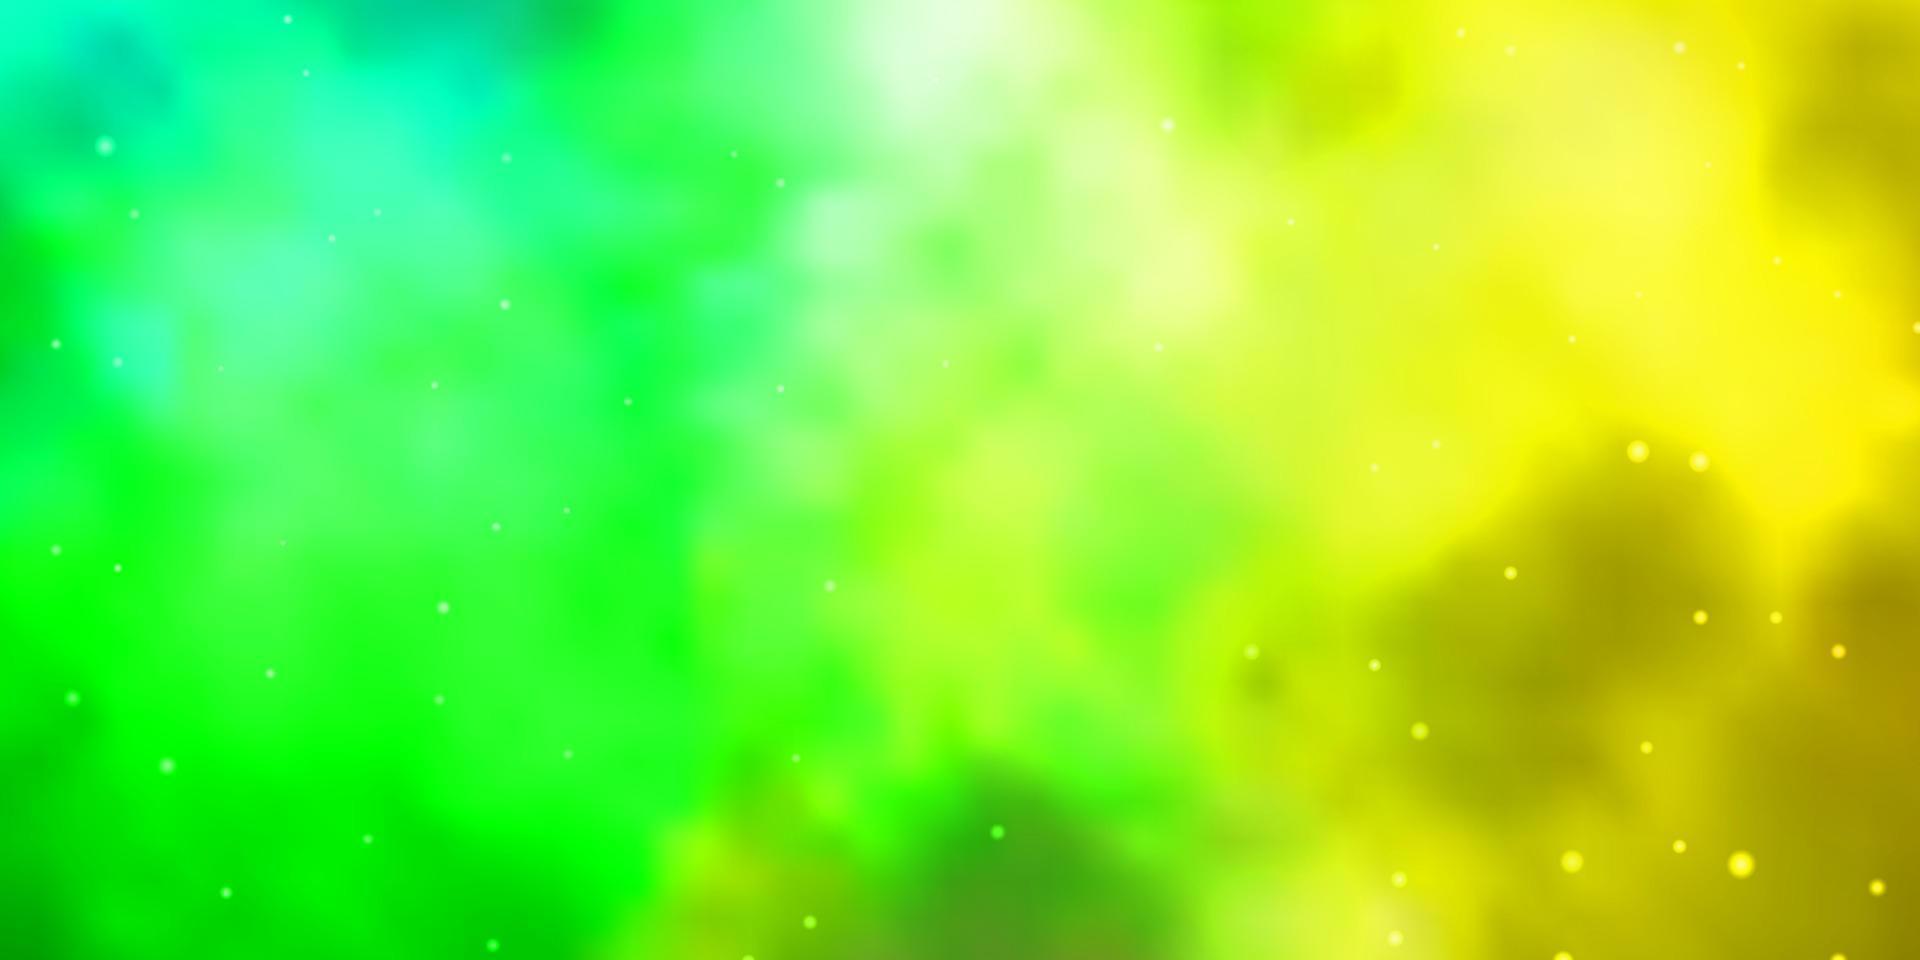 ljusgrön, gul vektormall med neonstjärnor. vektor